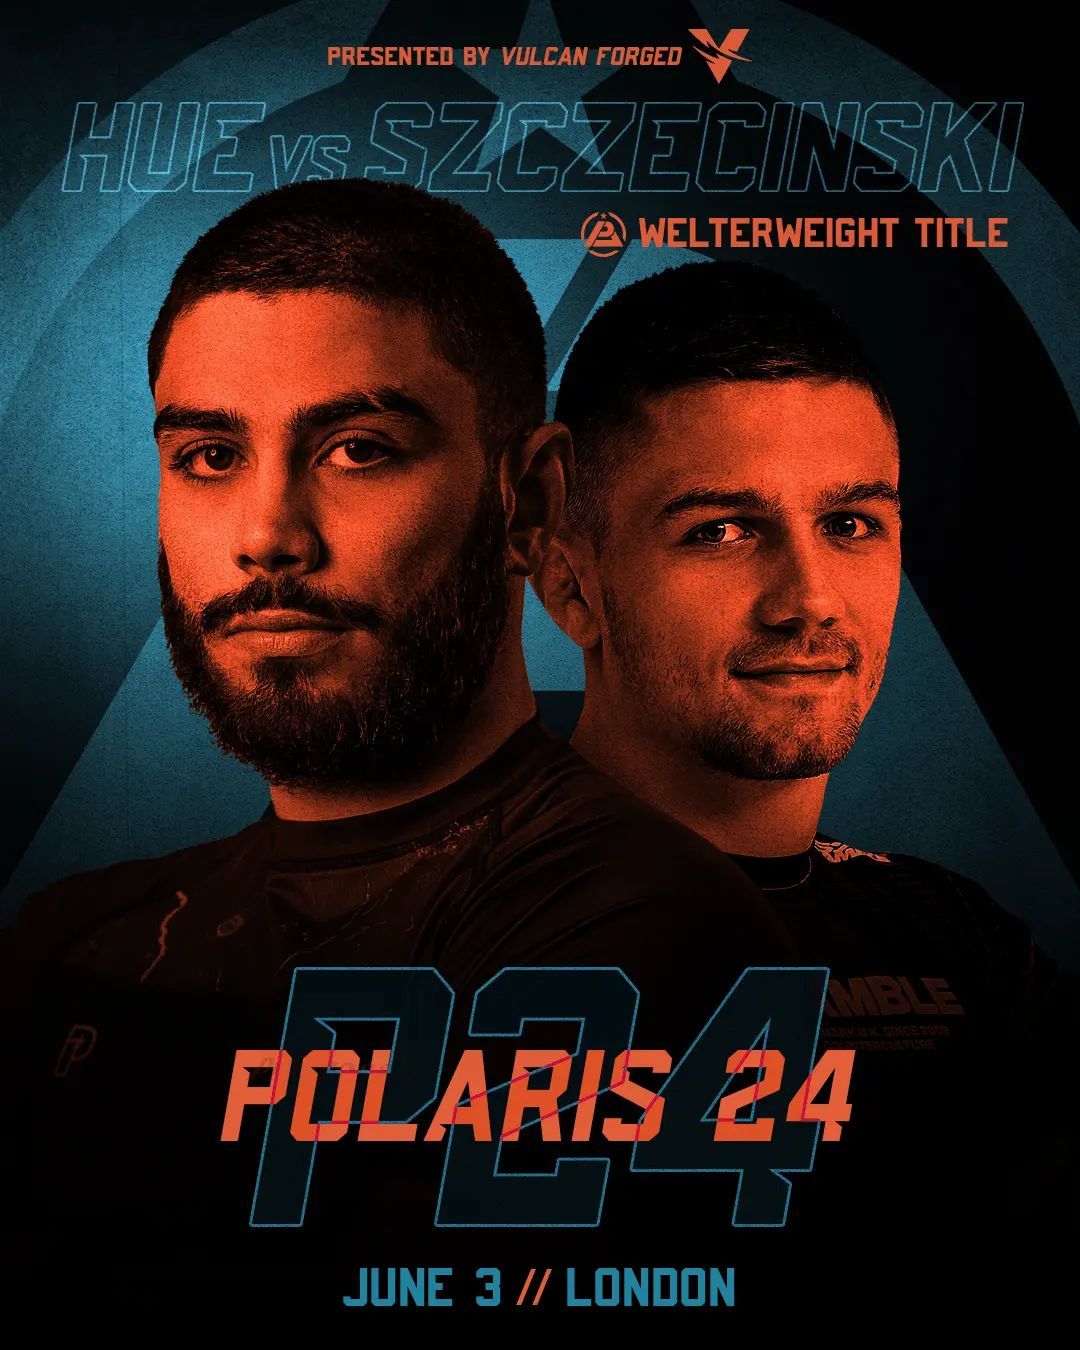 Polaris 24 - Hue vs Szczecinski